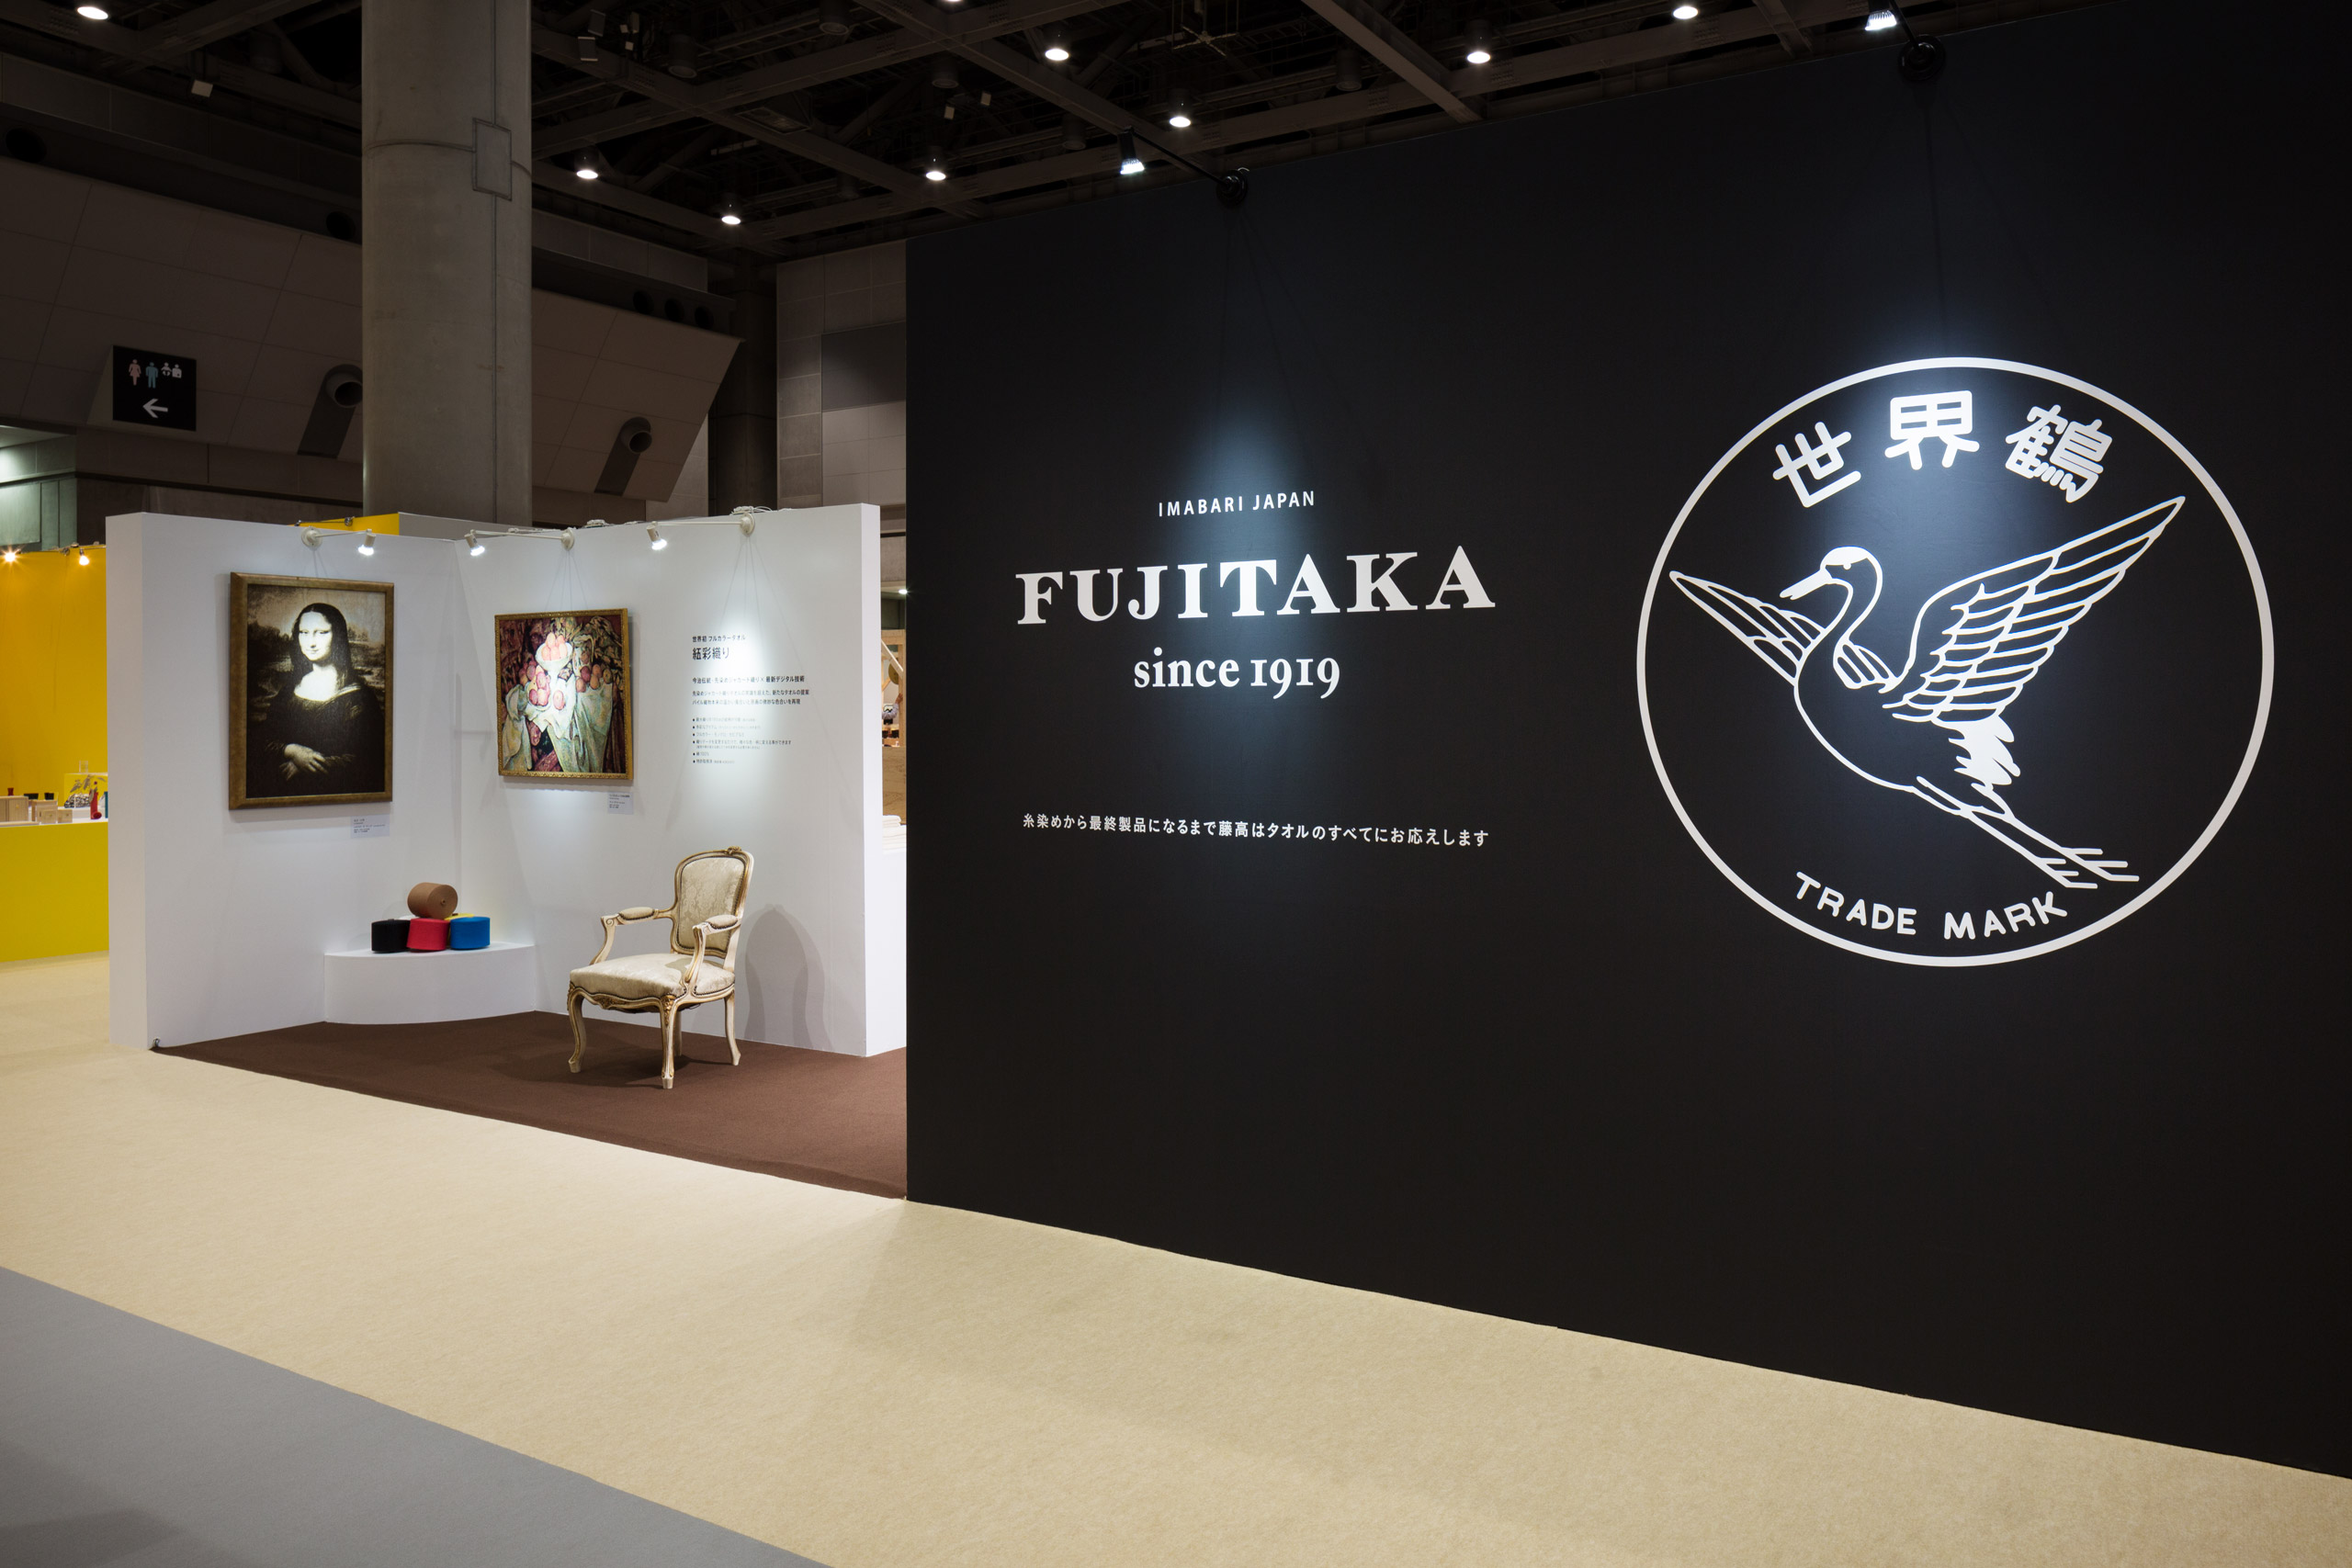 FUJITAKA graphic sign 2015